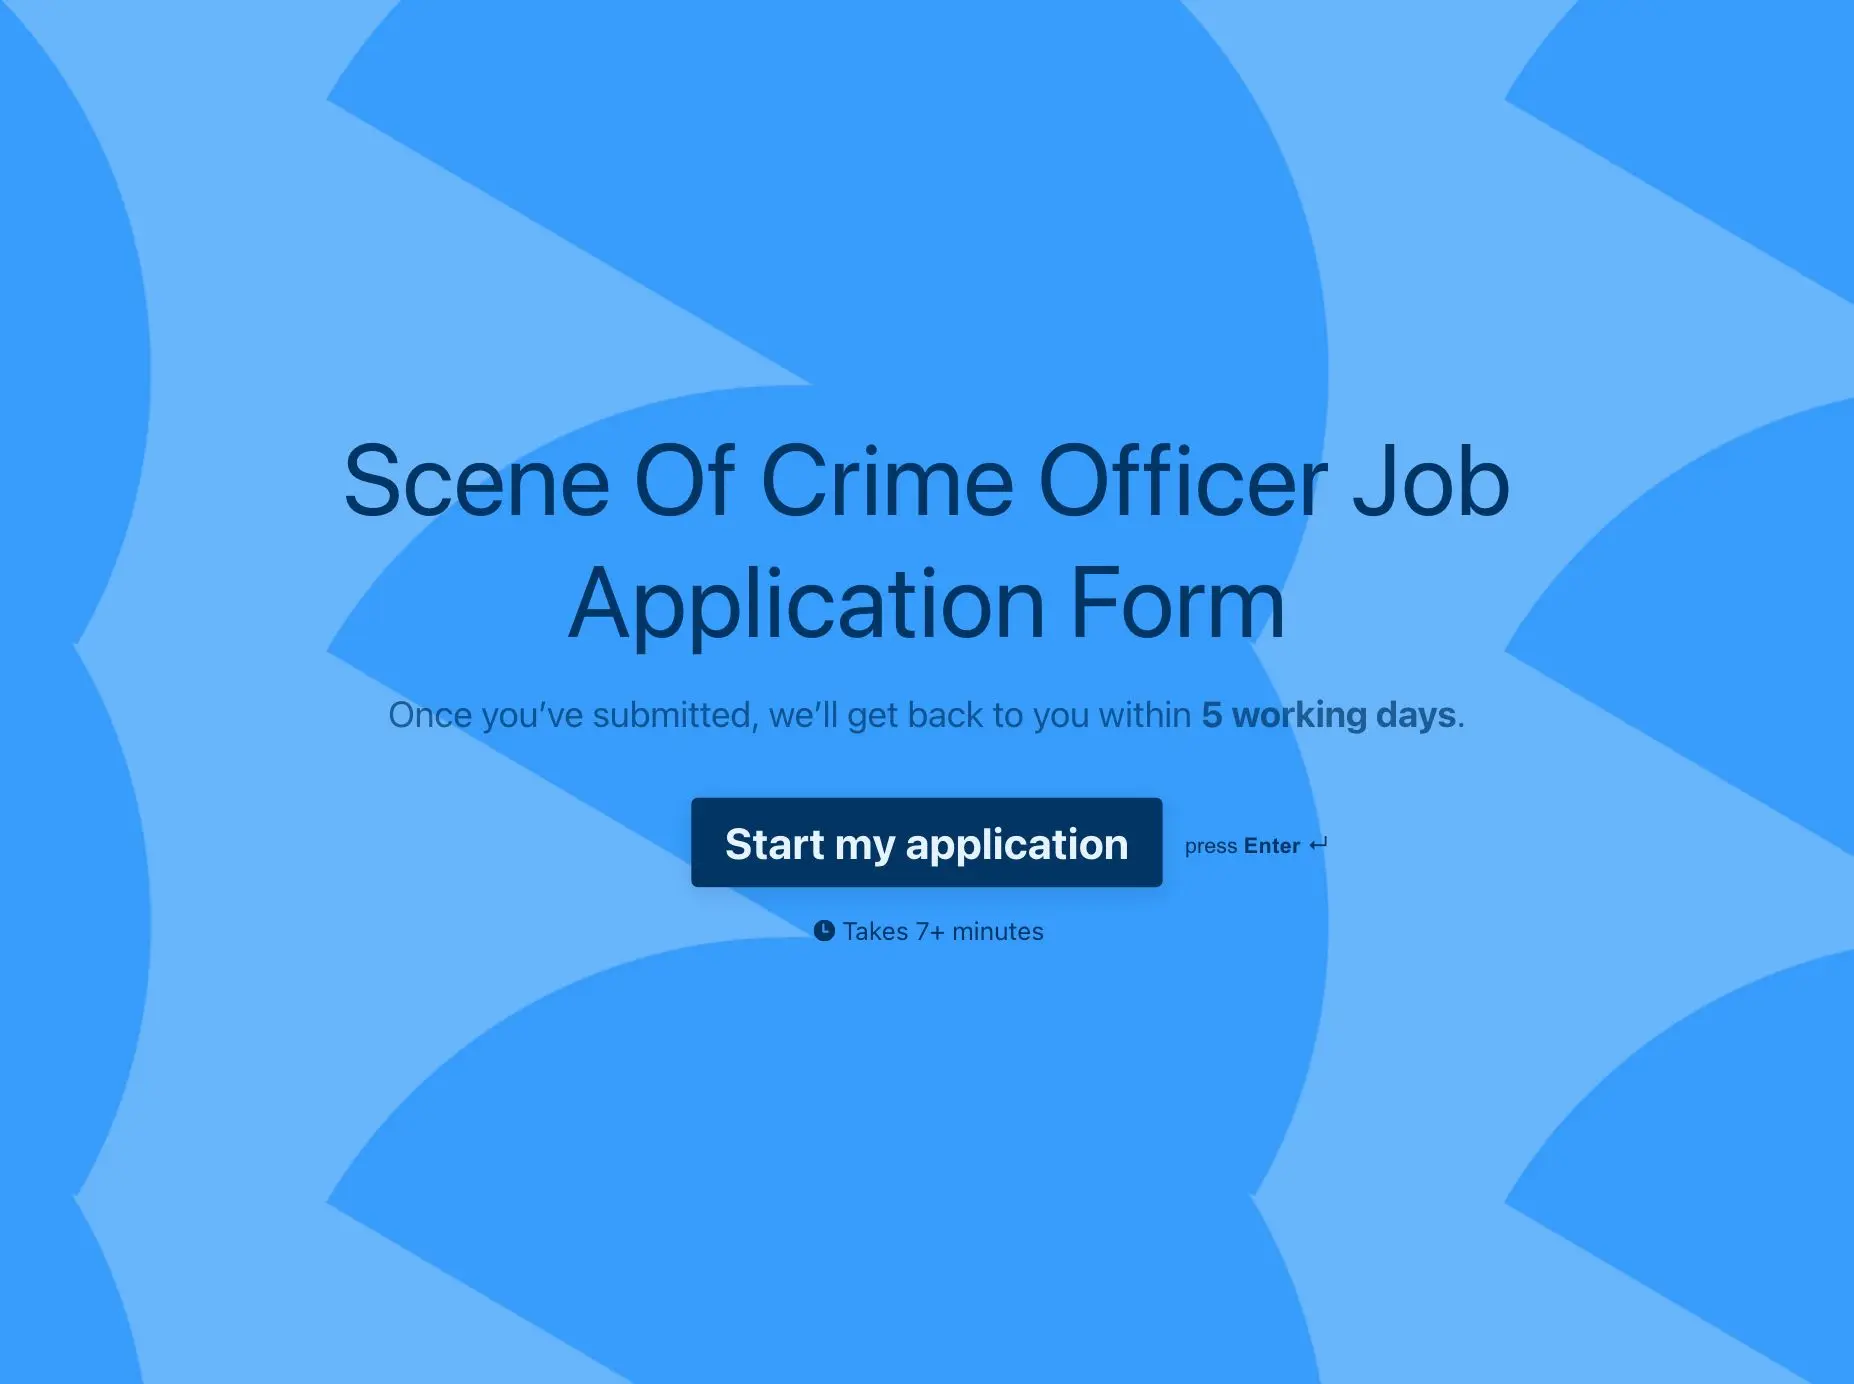 Scene Of Crime Officer Job Application Form Template Hero